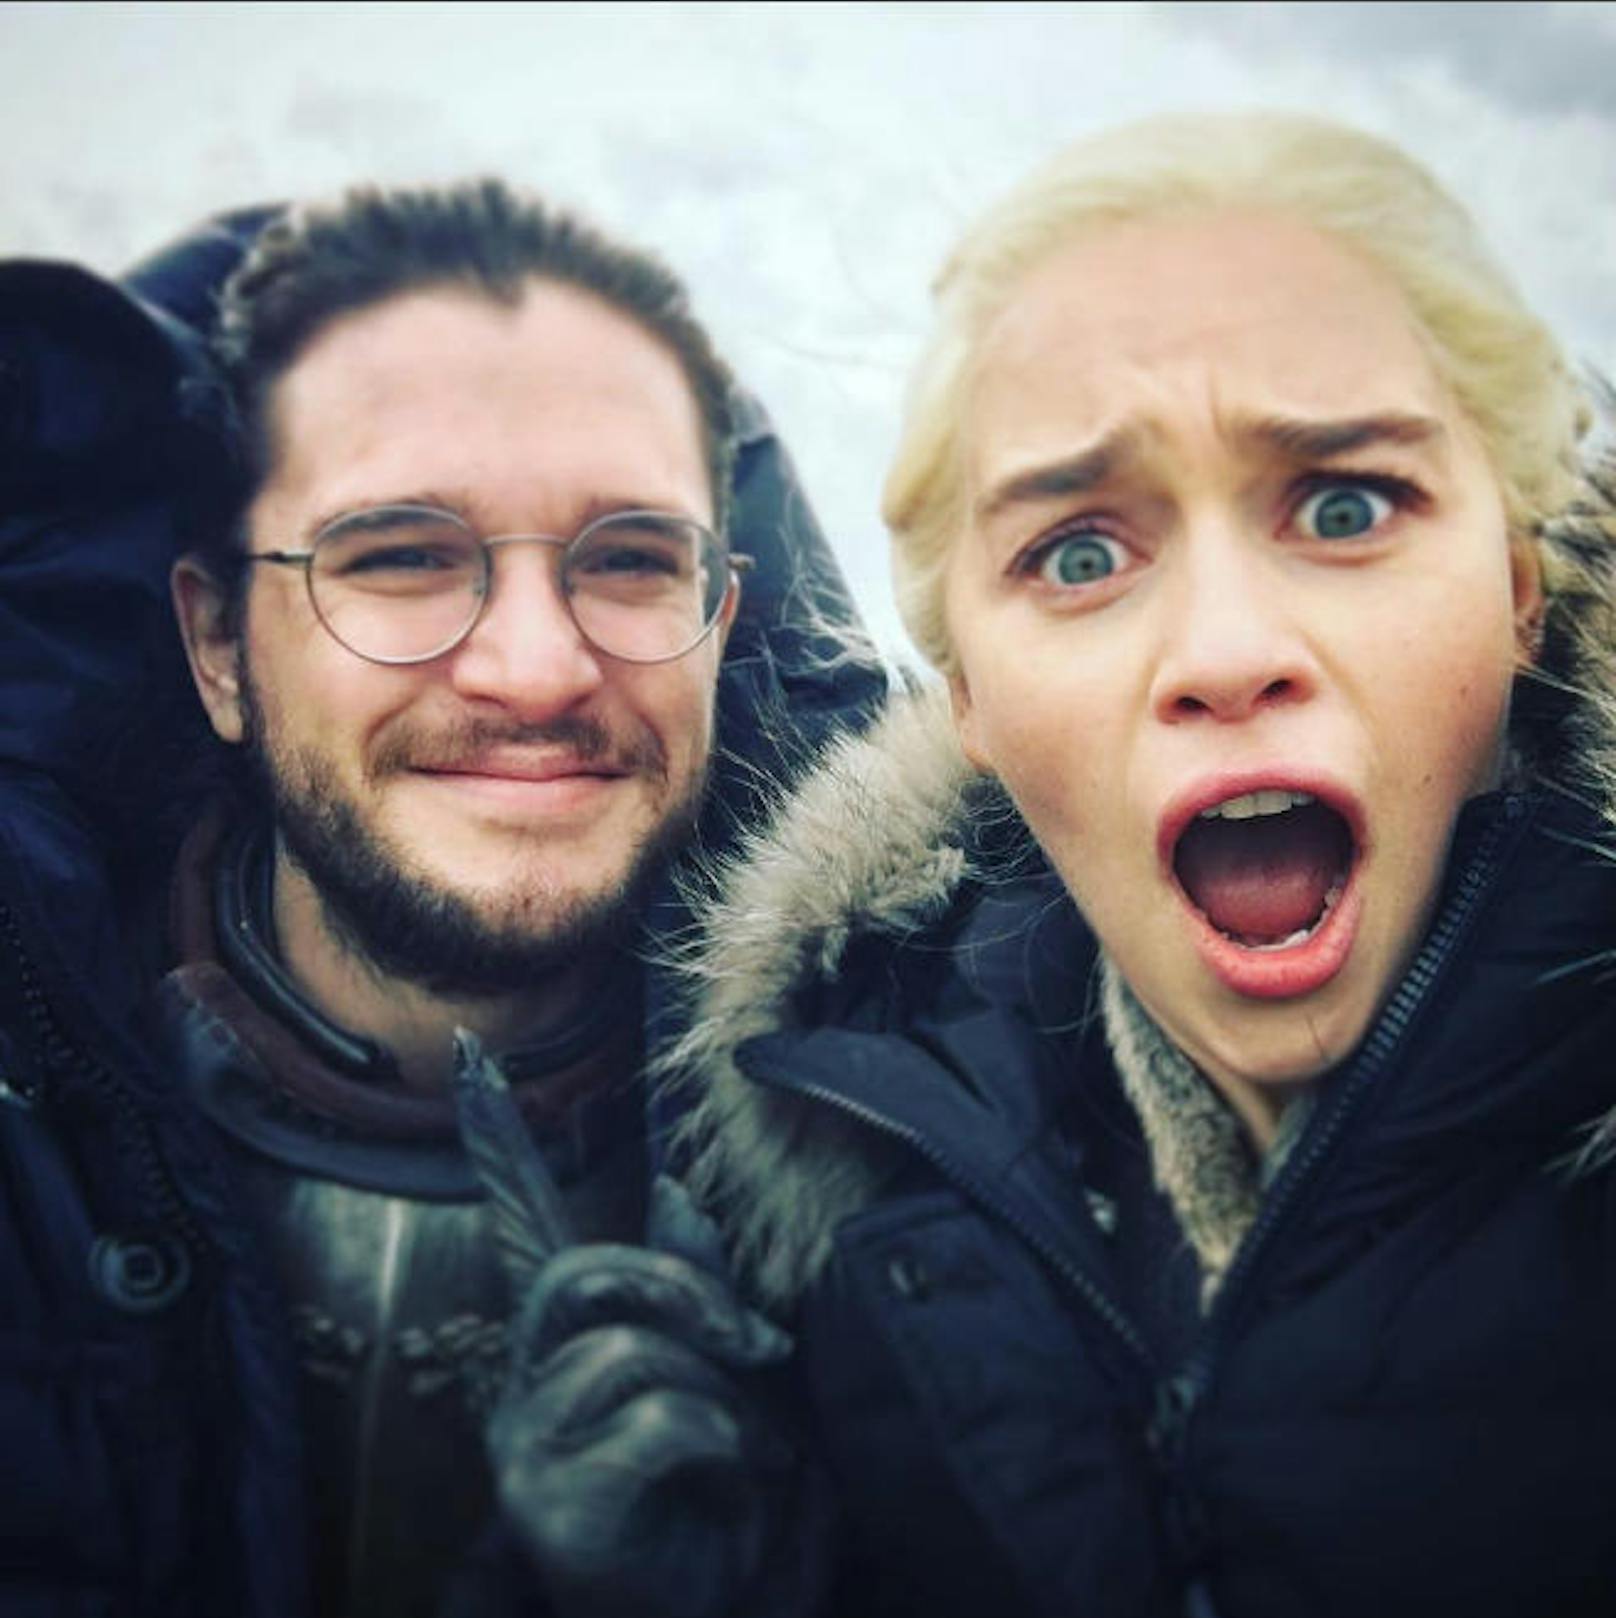 07.08.2017: "Game of Thrones"-Star Emilia Clarke teilte dieses lustige Selfie von sich und ihrem Kollegen Kit Harington: Wartet...habe ich euch das NICHT verraten?!" Etwa 13 Stunden nach Veröffentlichung auf ihrer Instagram-Seite hat der Schnappschuss bereits fast zwei Millionen Likes!